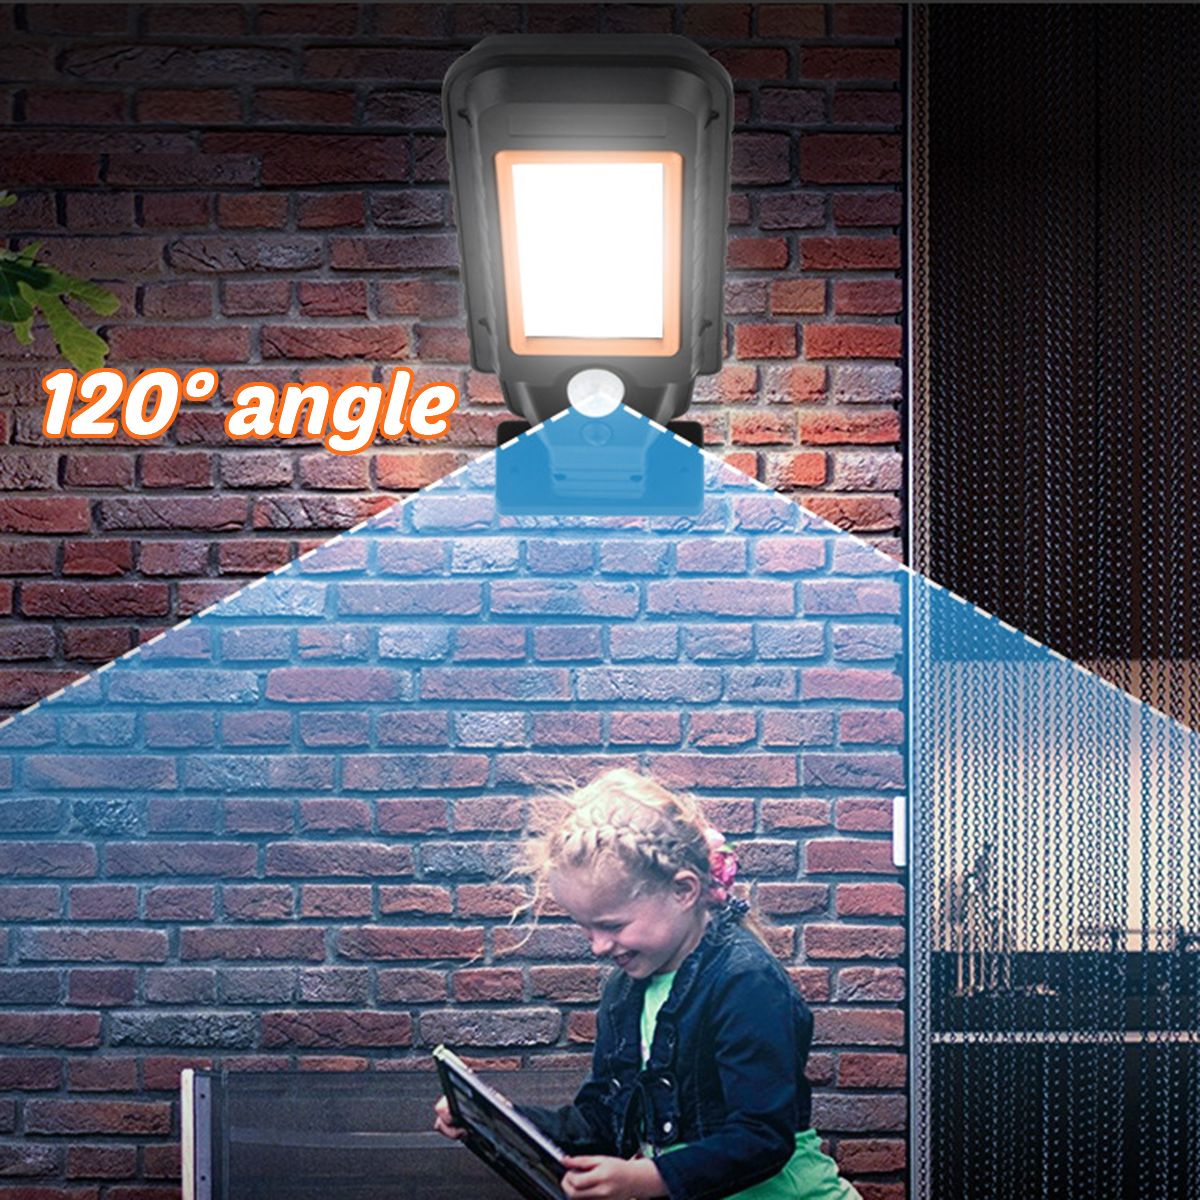 LED-Solar-Lights-Power-PIR-Motion-Sensor-Wall-Light-Waterproof-Outdoor-Garden-Lamps-1707069